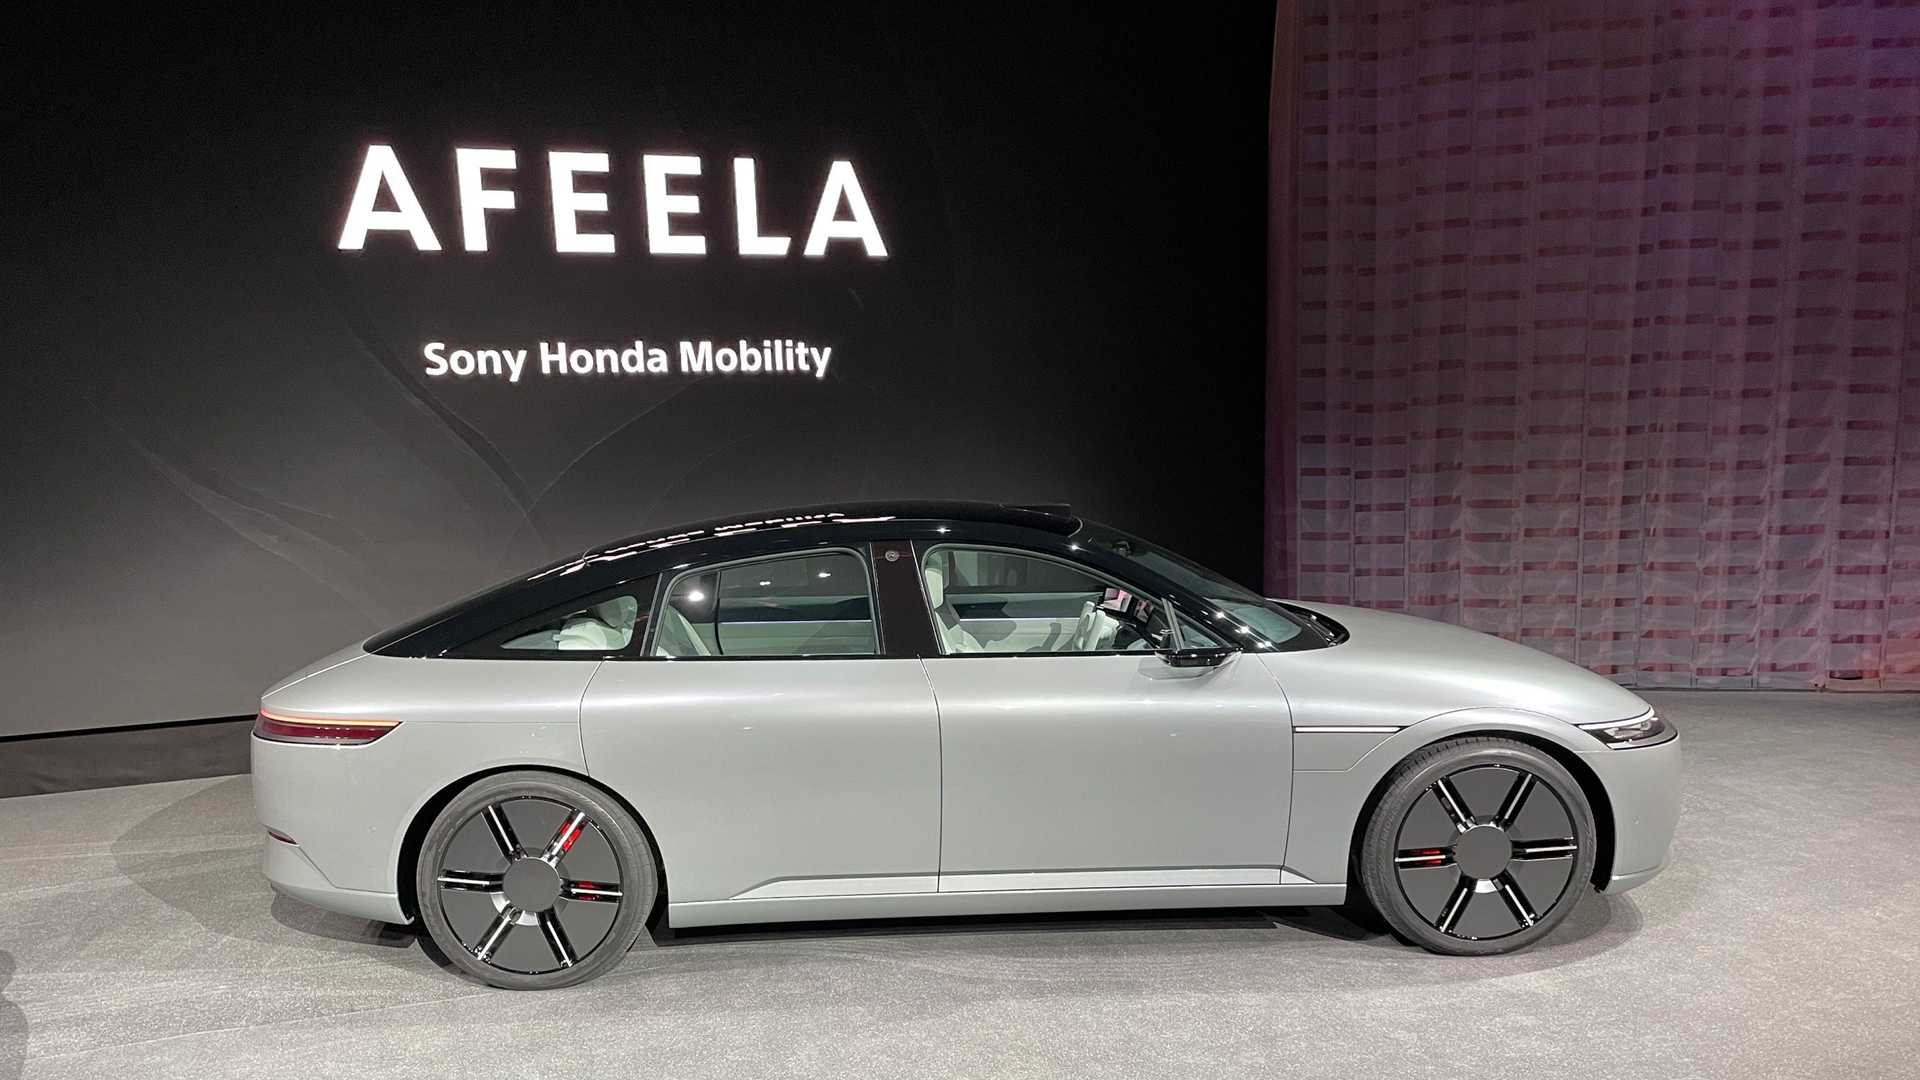 سوني تطلق علامتها التجارية الجديدة للسيارات رسمياً بالتعاون مع هوندا 21